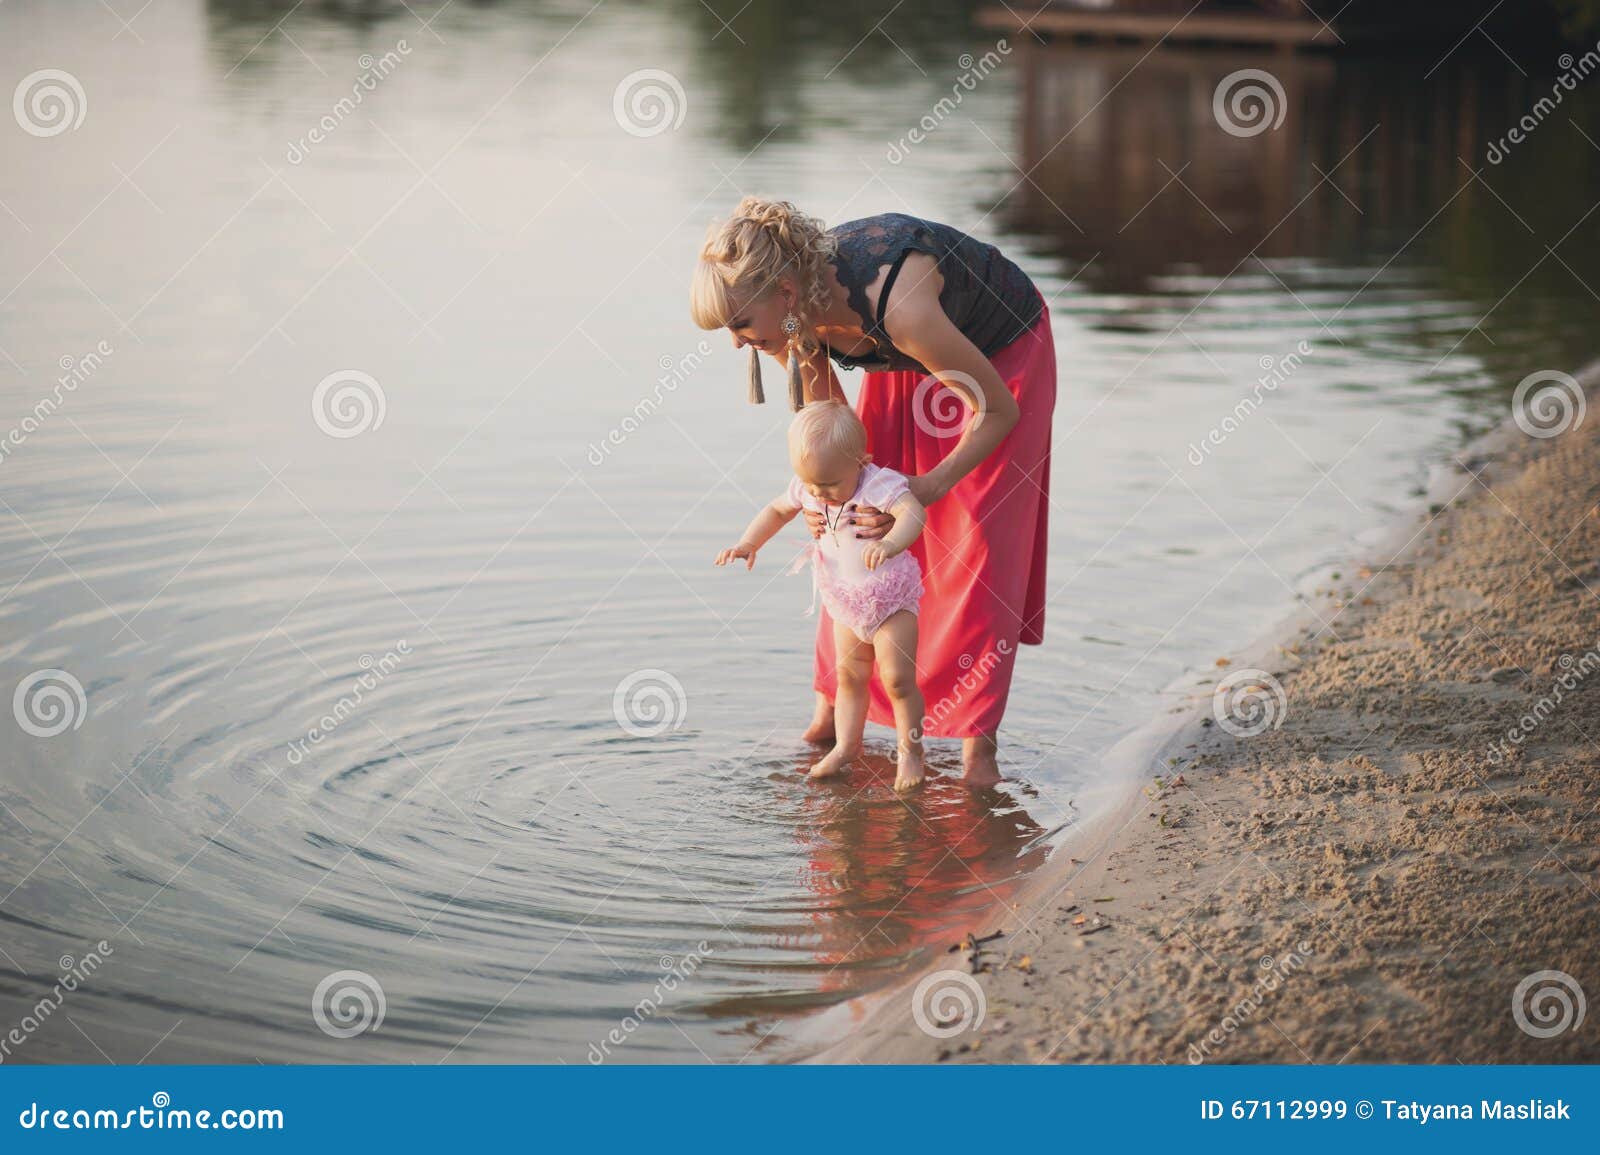 Дочка пописала. Мать и дети возле воды. Дочка маленькая купается. Помогаю своей дочке пописать. Дочка маленькая в грязи.